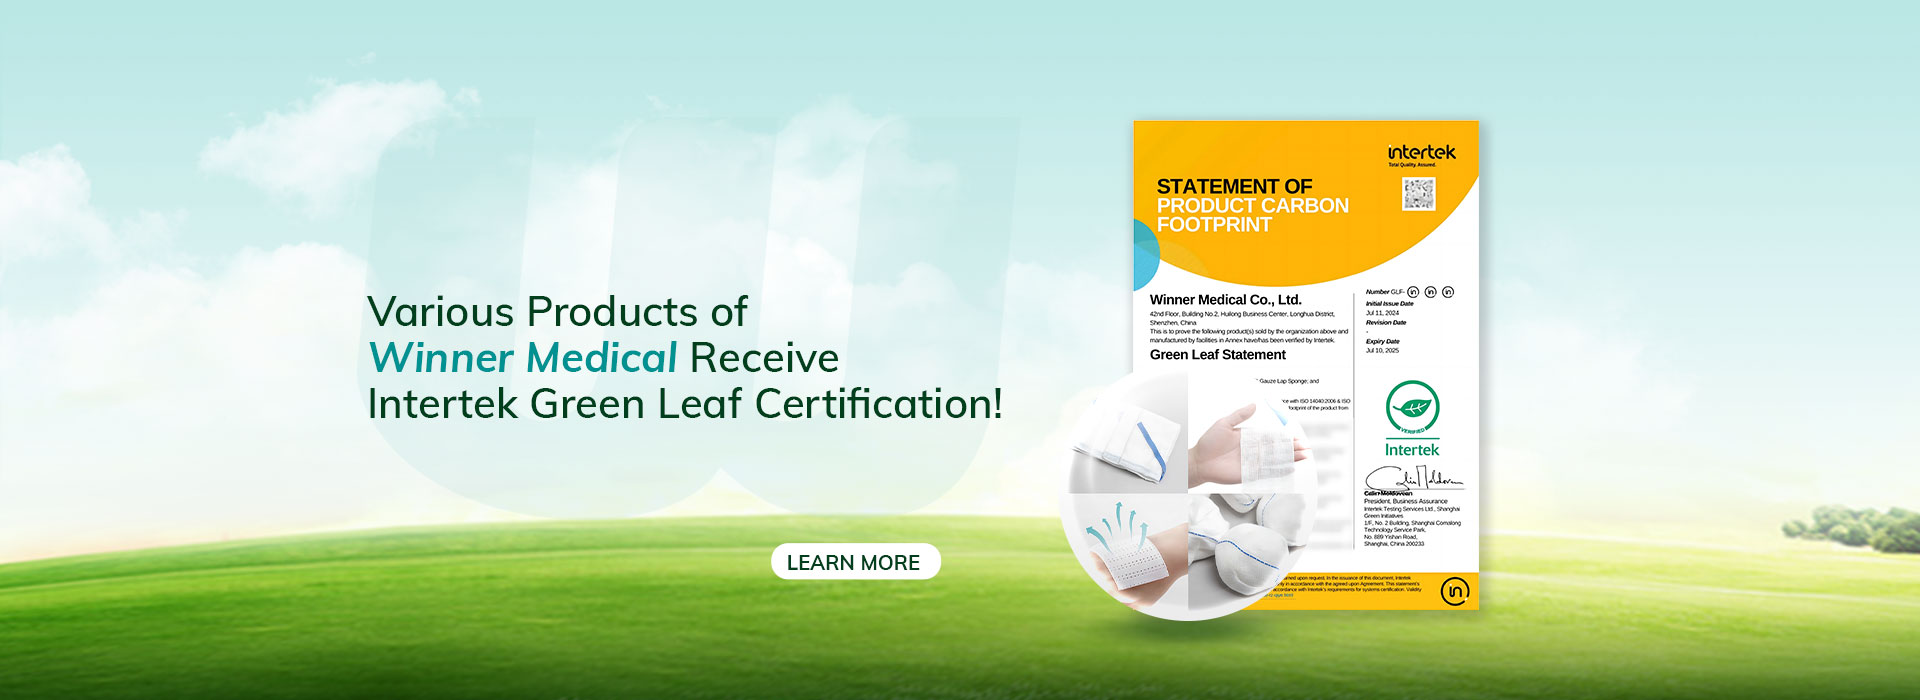 НОВОСТИ! Различные продукты Winner Medical получают сертификацию Intertek Green Leaf!